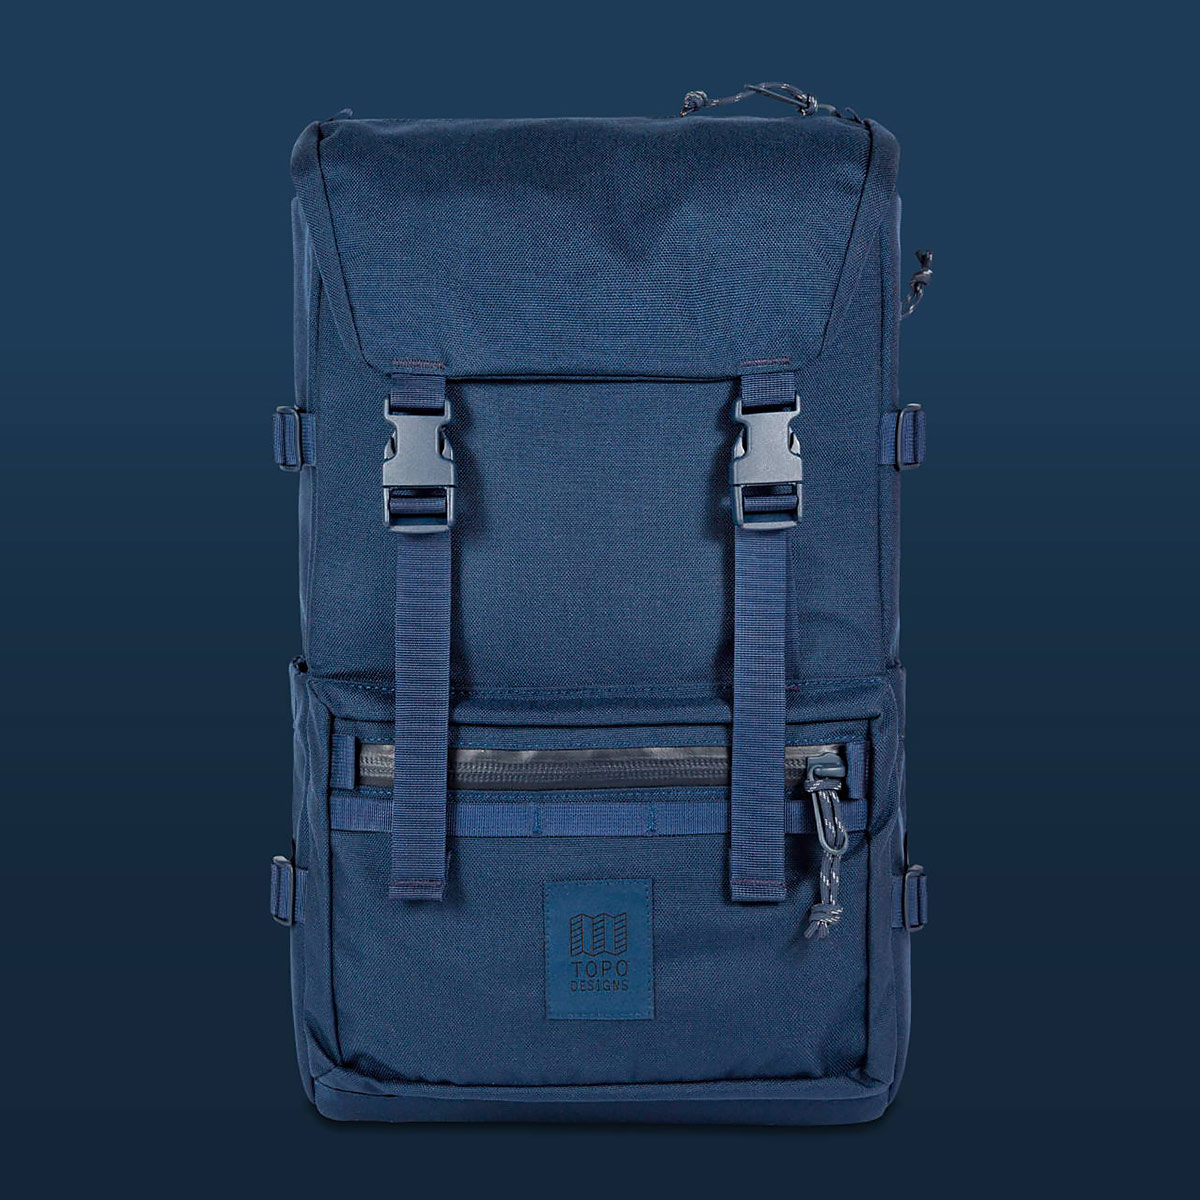 Topo Designs Rover Pack Tech Navy, der ideale Rucksack für den täglichen Gebrauch